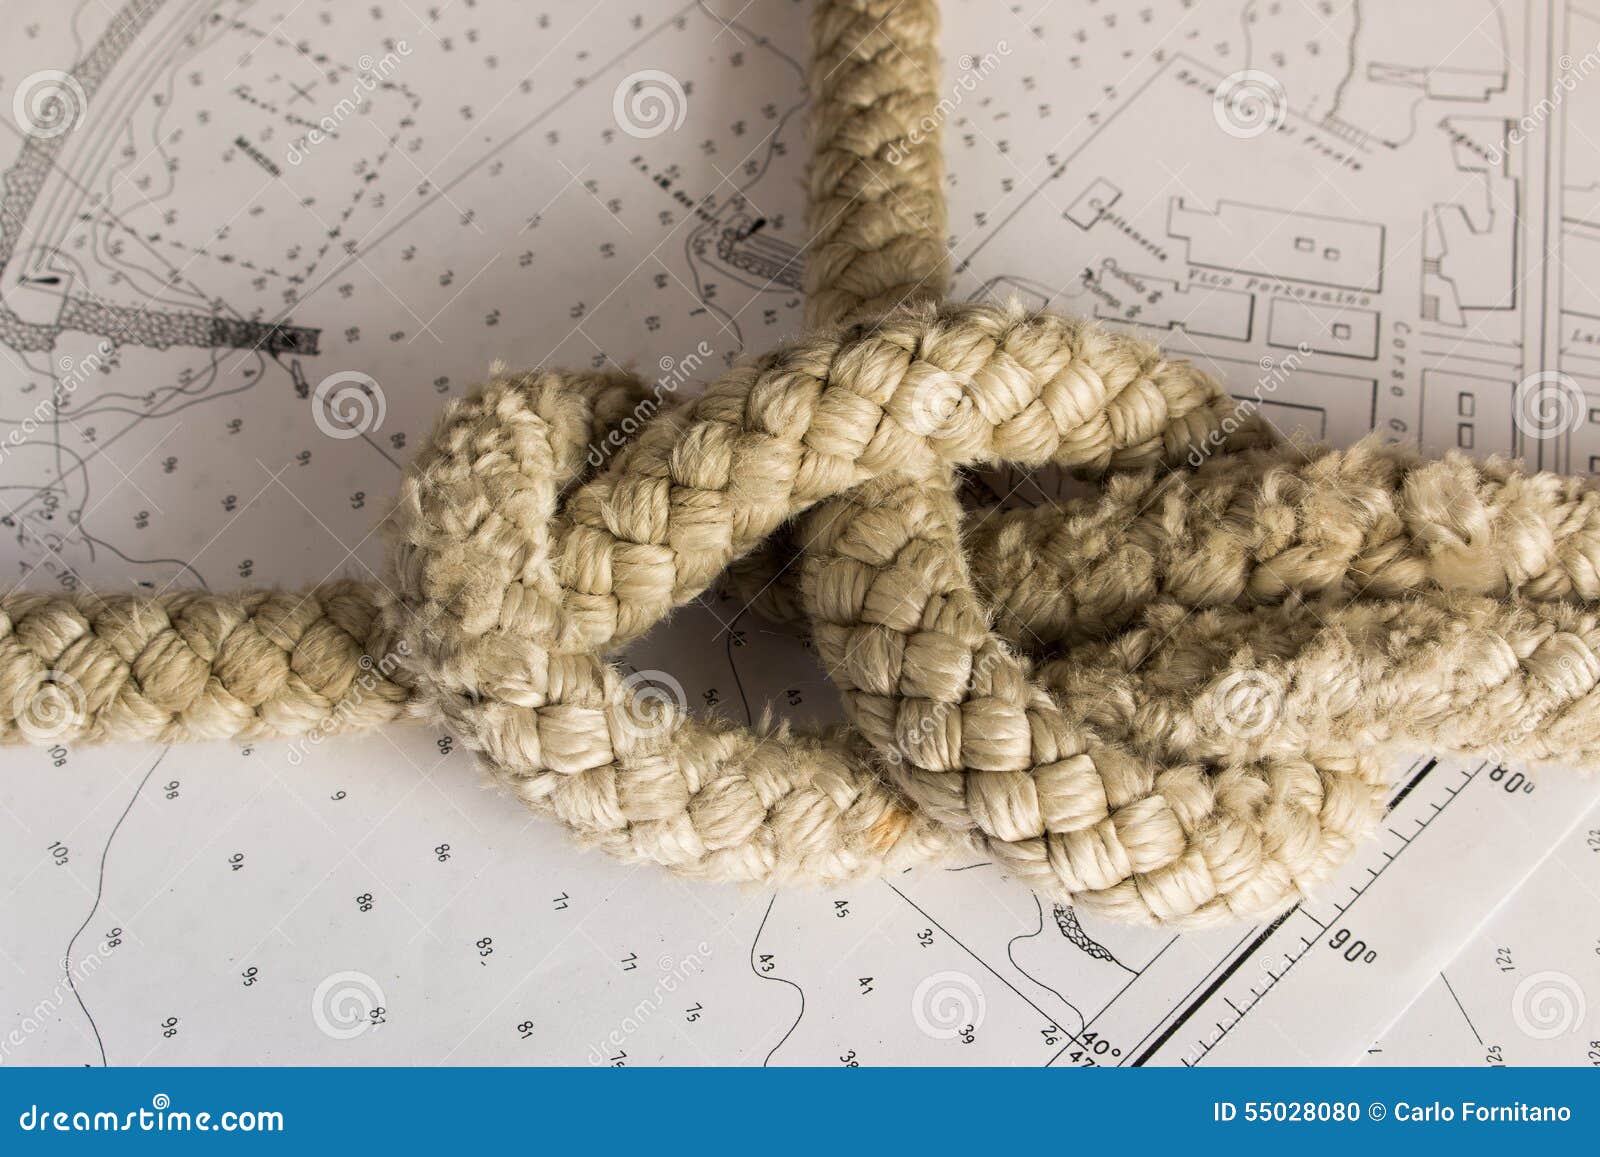 Nautical Knot Chart